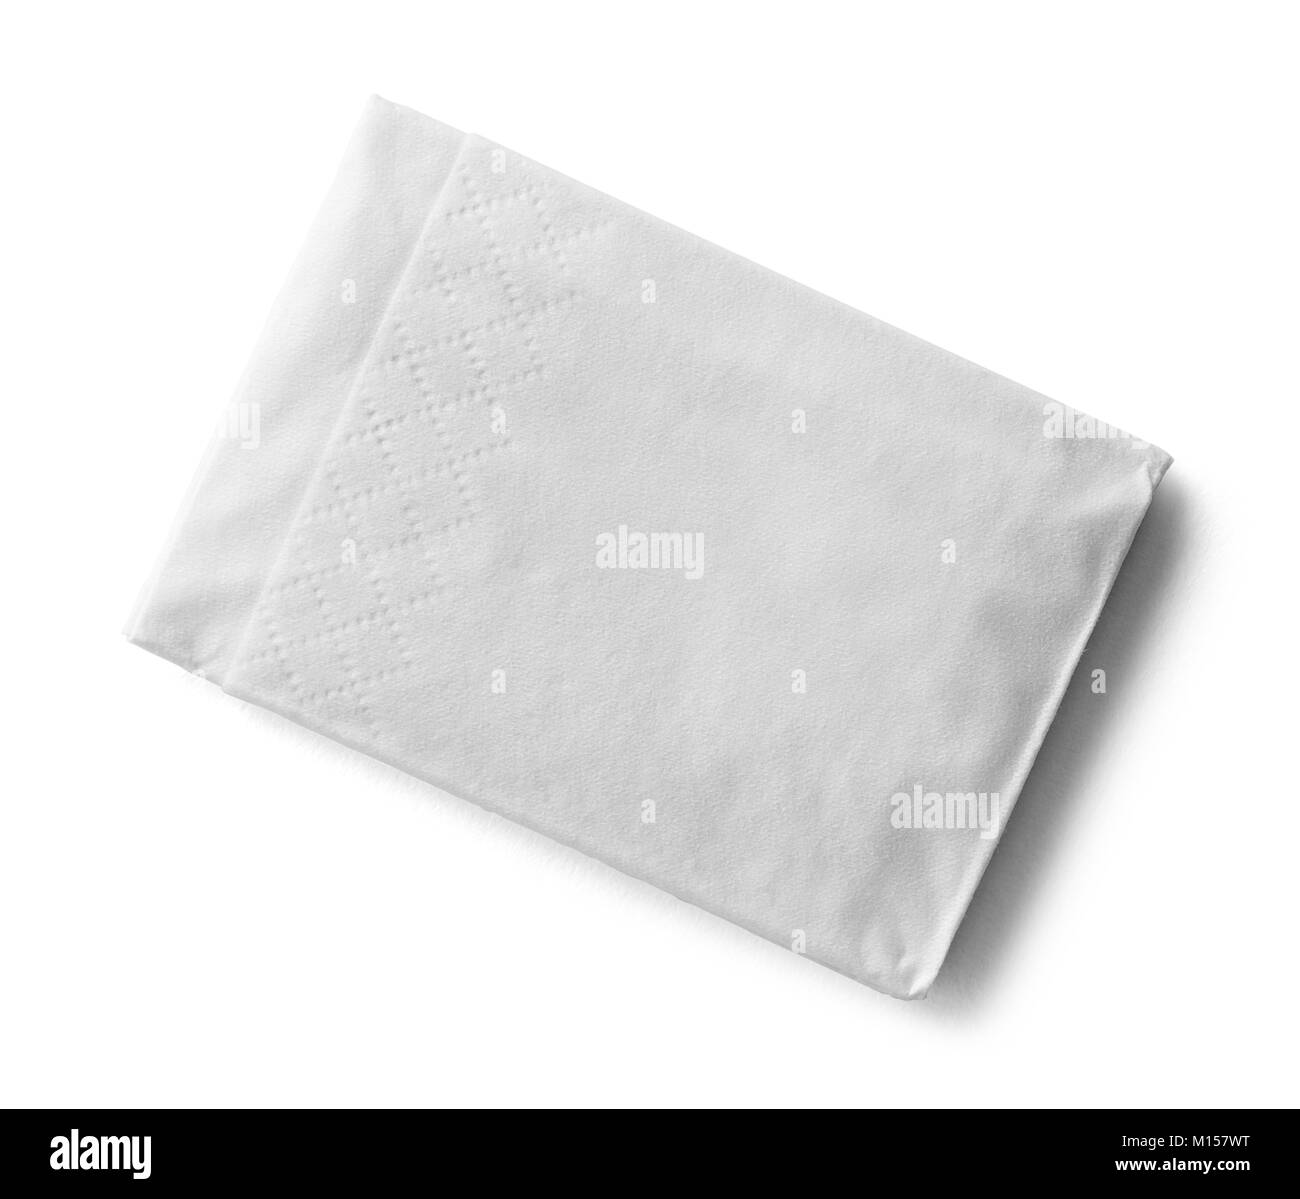 Single Folded Tissue Isolated on a White Background. Stock Photo